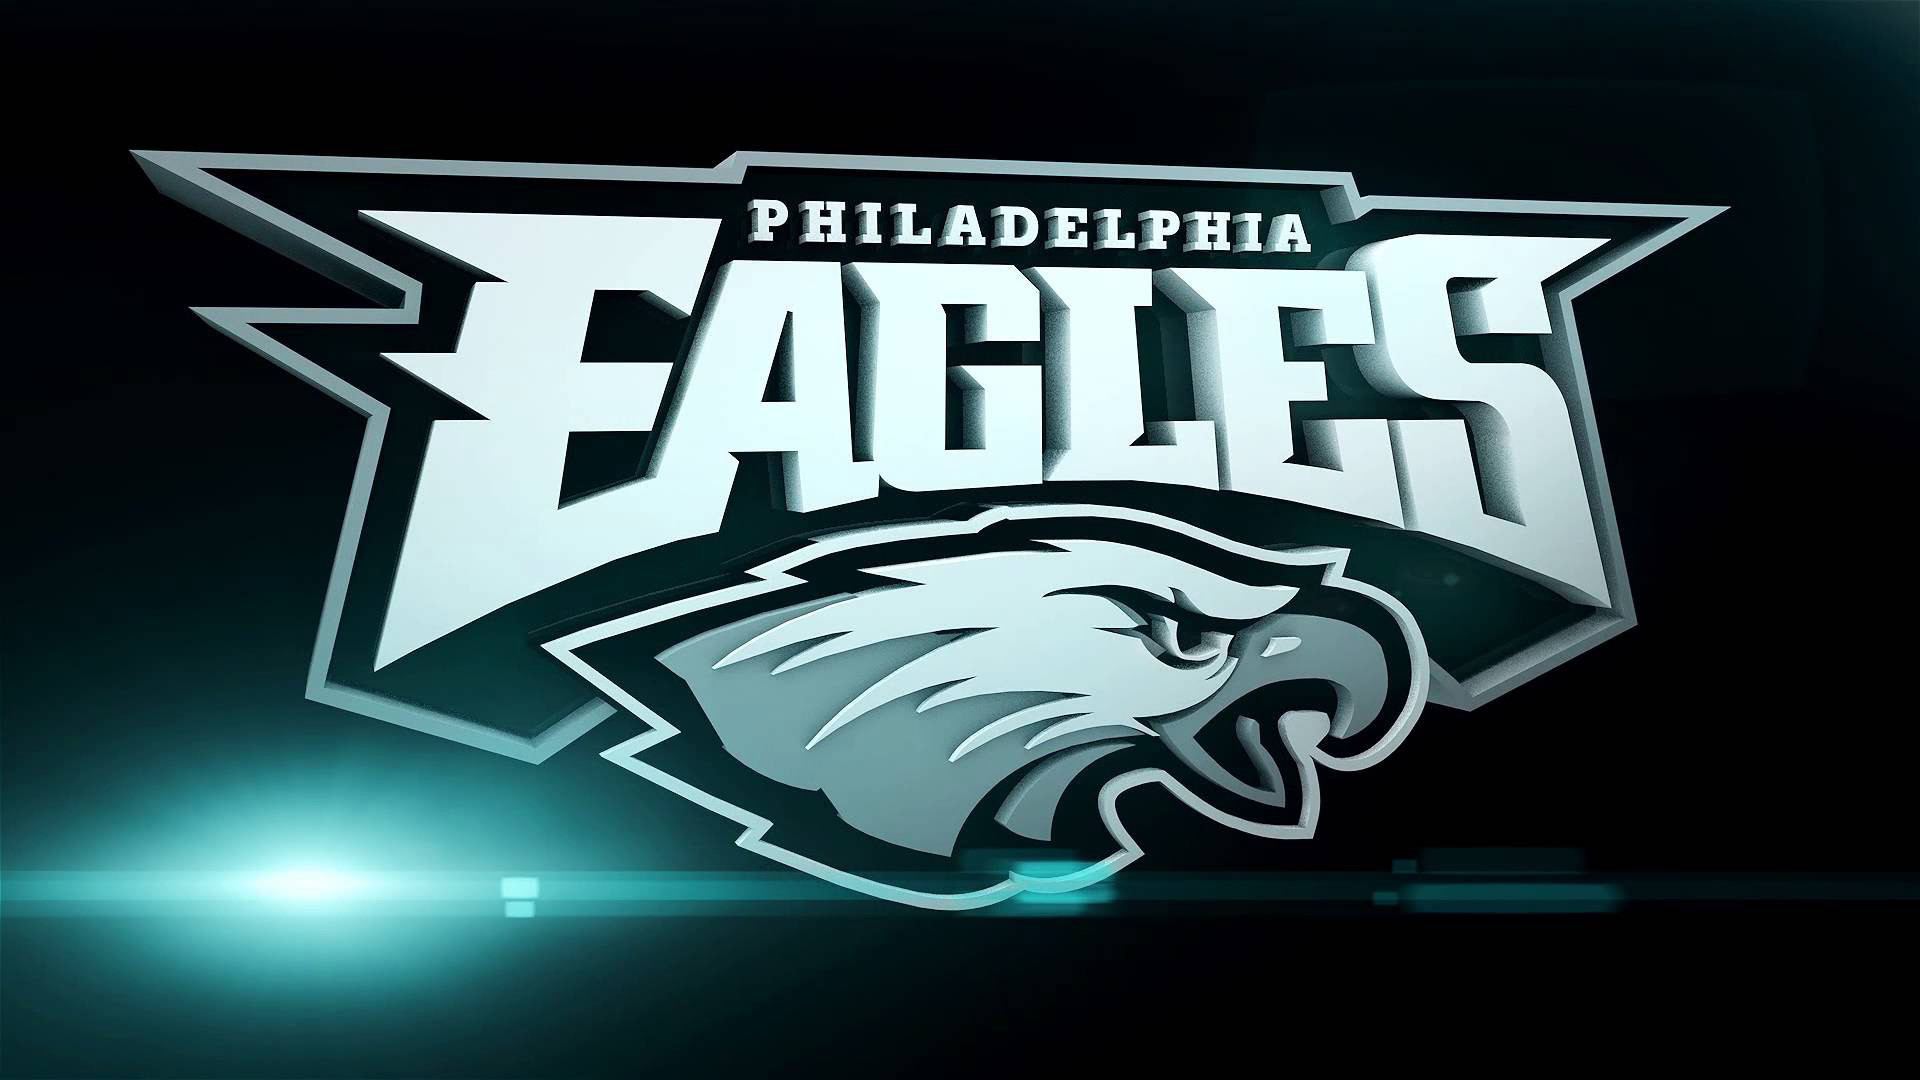 Nếu bạn đang tìm kiếm một bộ sưu tập hình nền độ phân giải cao HD về đội bóng rổ Philadelphia Eagles, thì bạn đã đến đúng nơi. Chỉ với một lần nhấp chuột, bạn sẽ được thưởng thức tất cả hình ảnh đẹp nhất về đội bóng của mình.